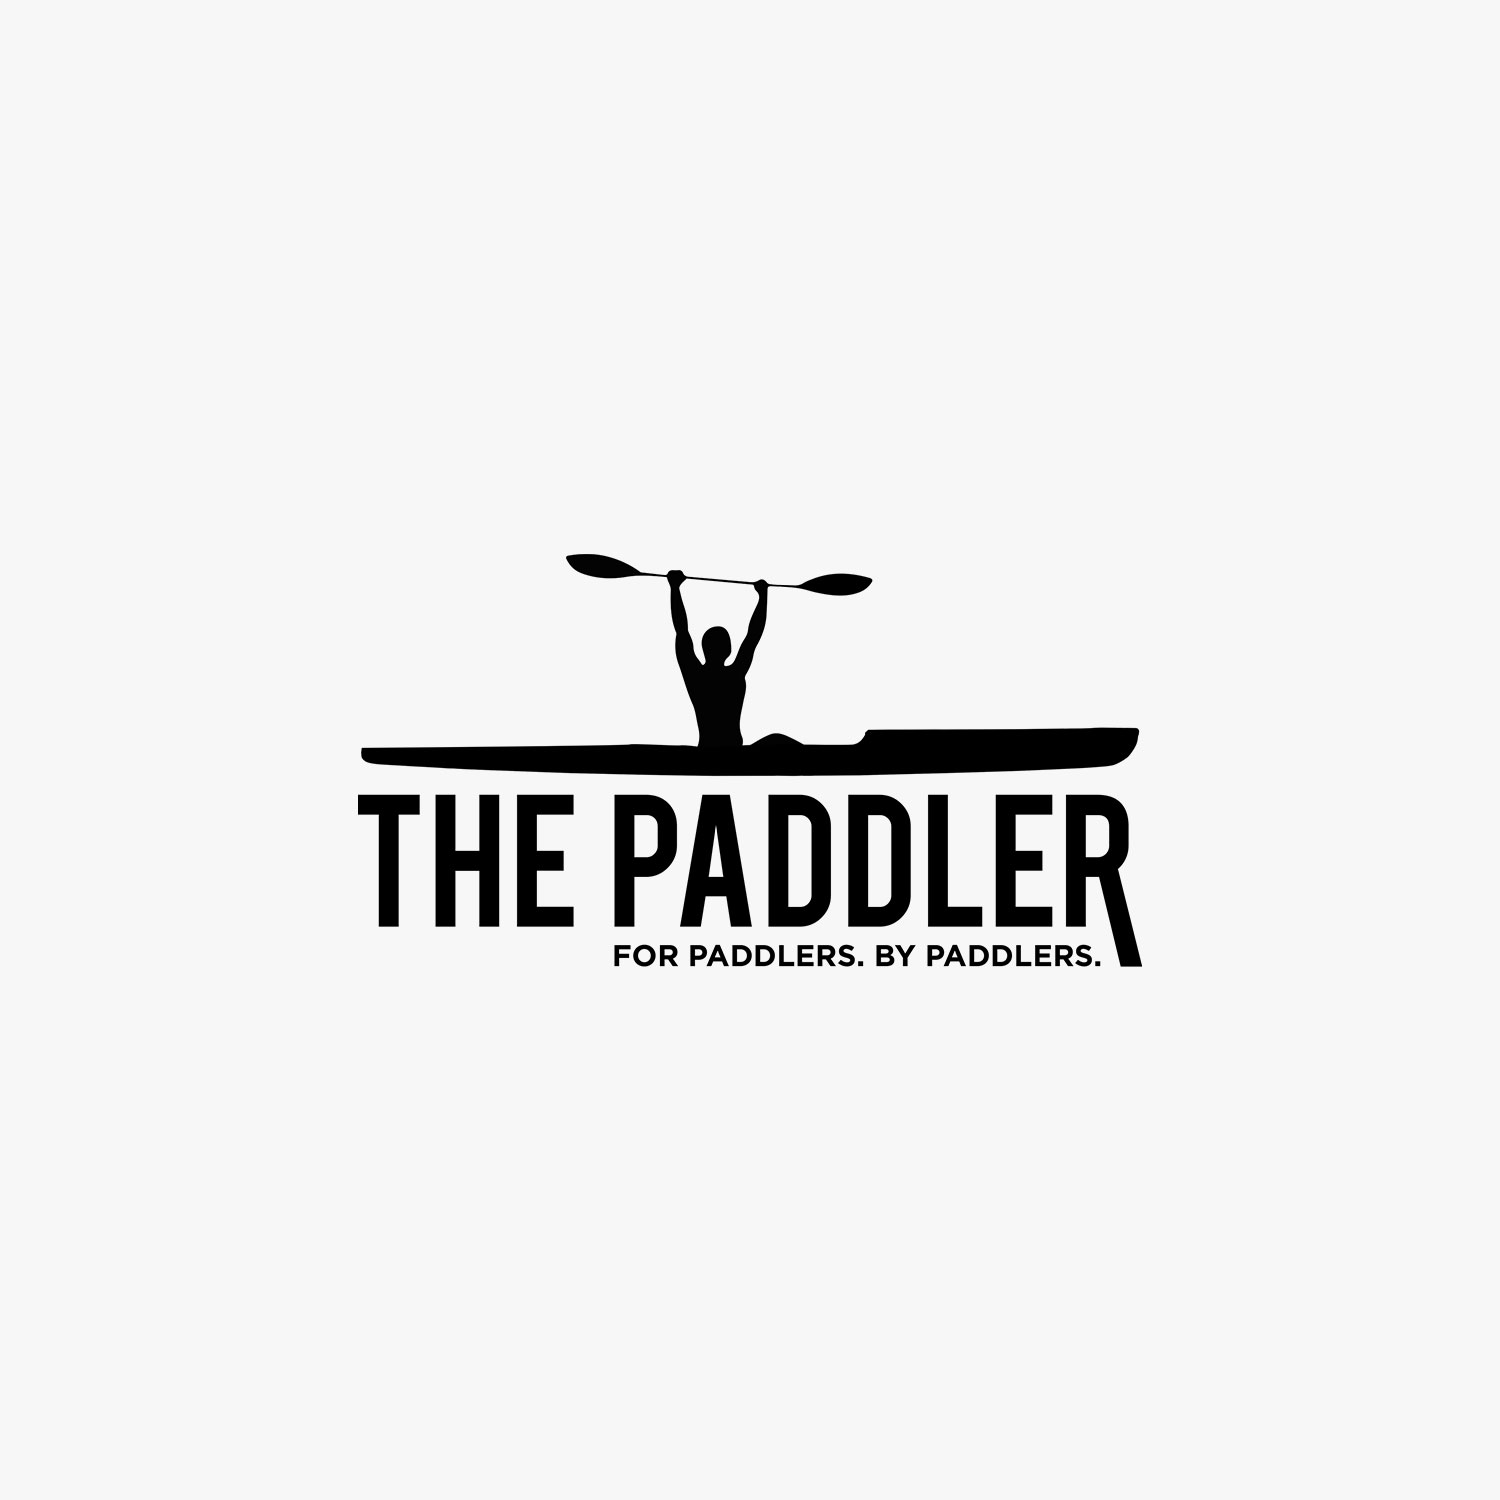 The Paddler